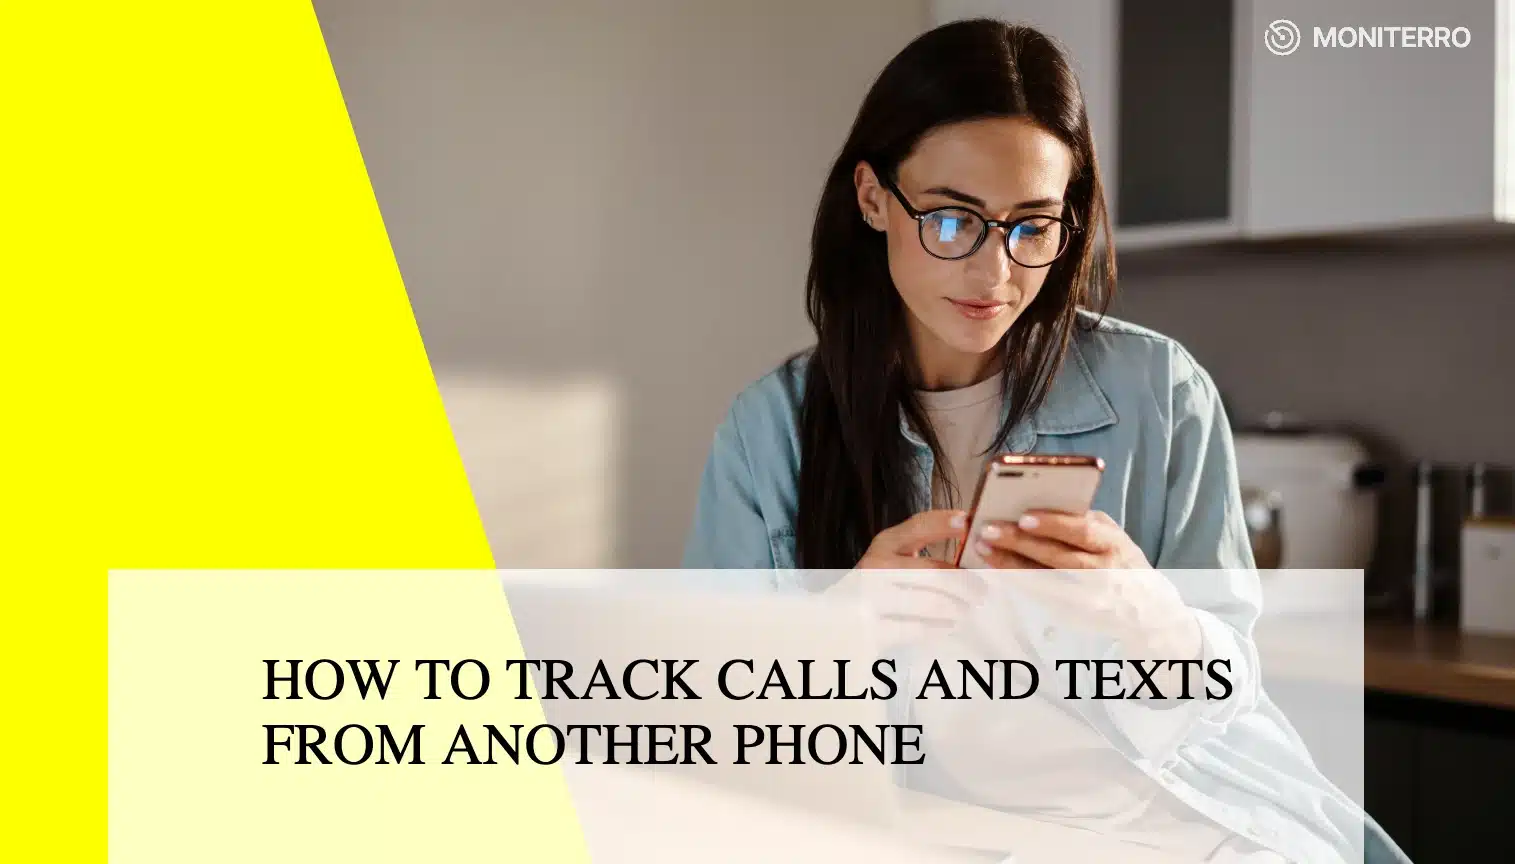 Cum să urmăriți gratuit apelurile și mesajele de pe un alt telefon